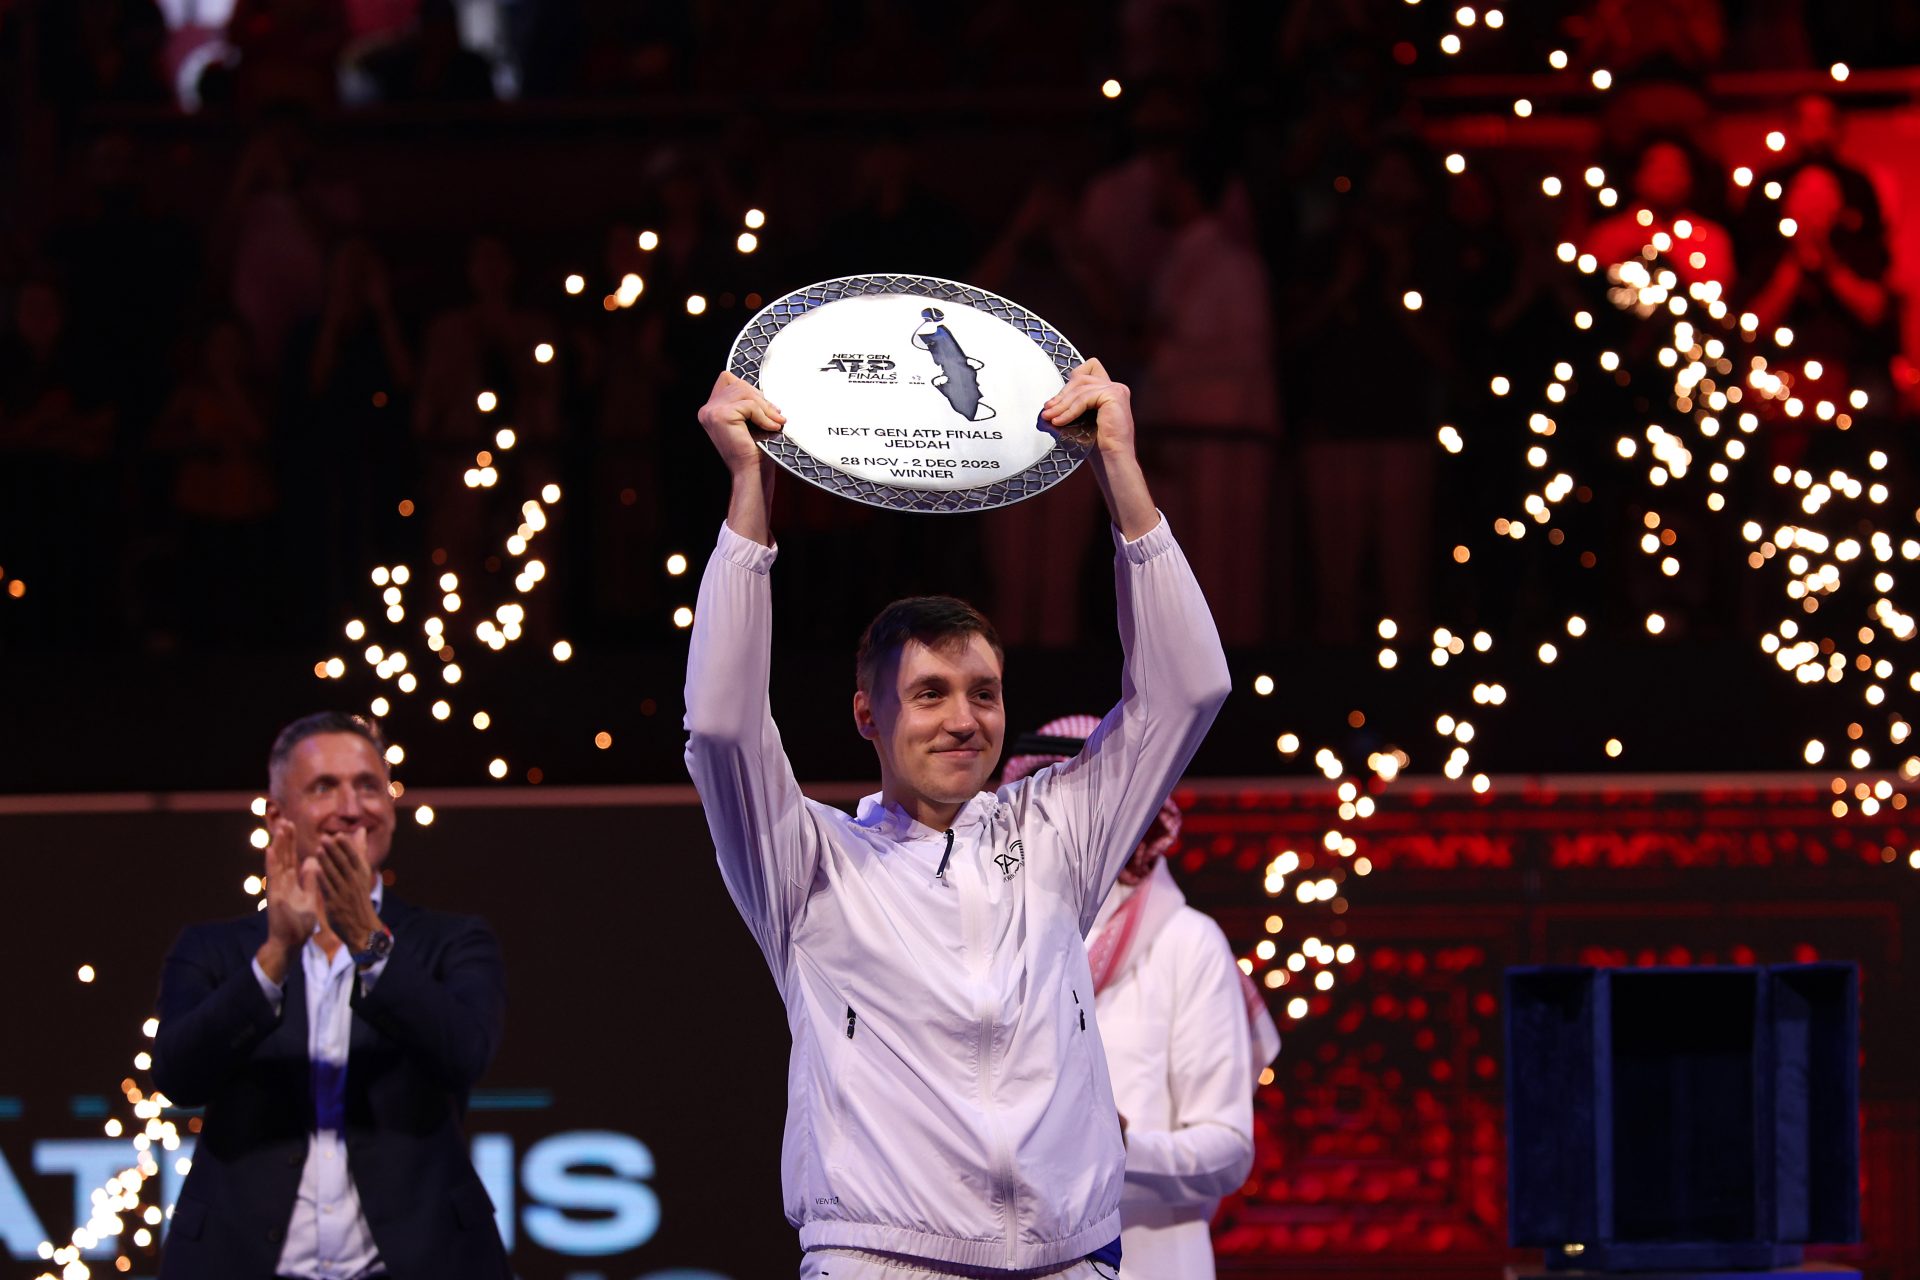 Qui est Hamad Medjedovic, le vainqueur du Masters Next Gen, héritier de Novak Djokovic ?